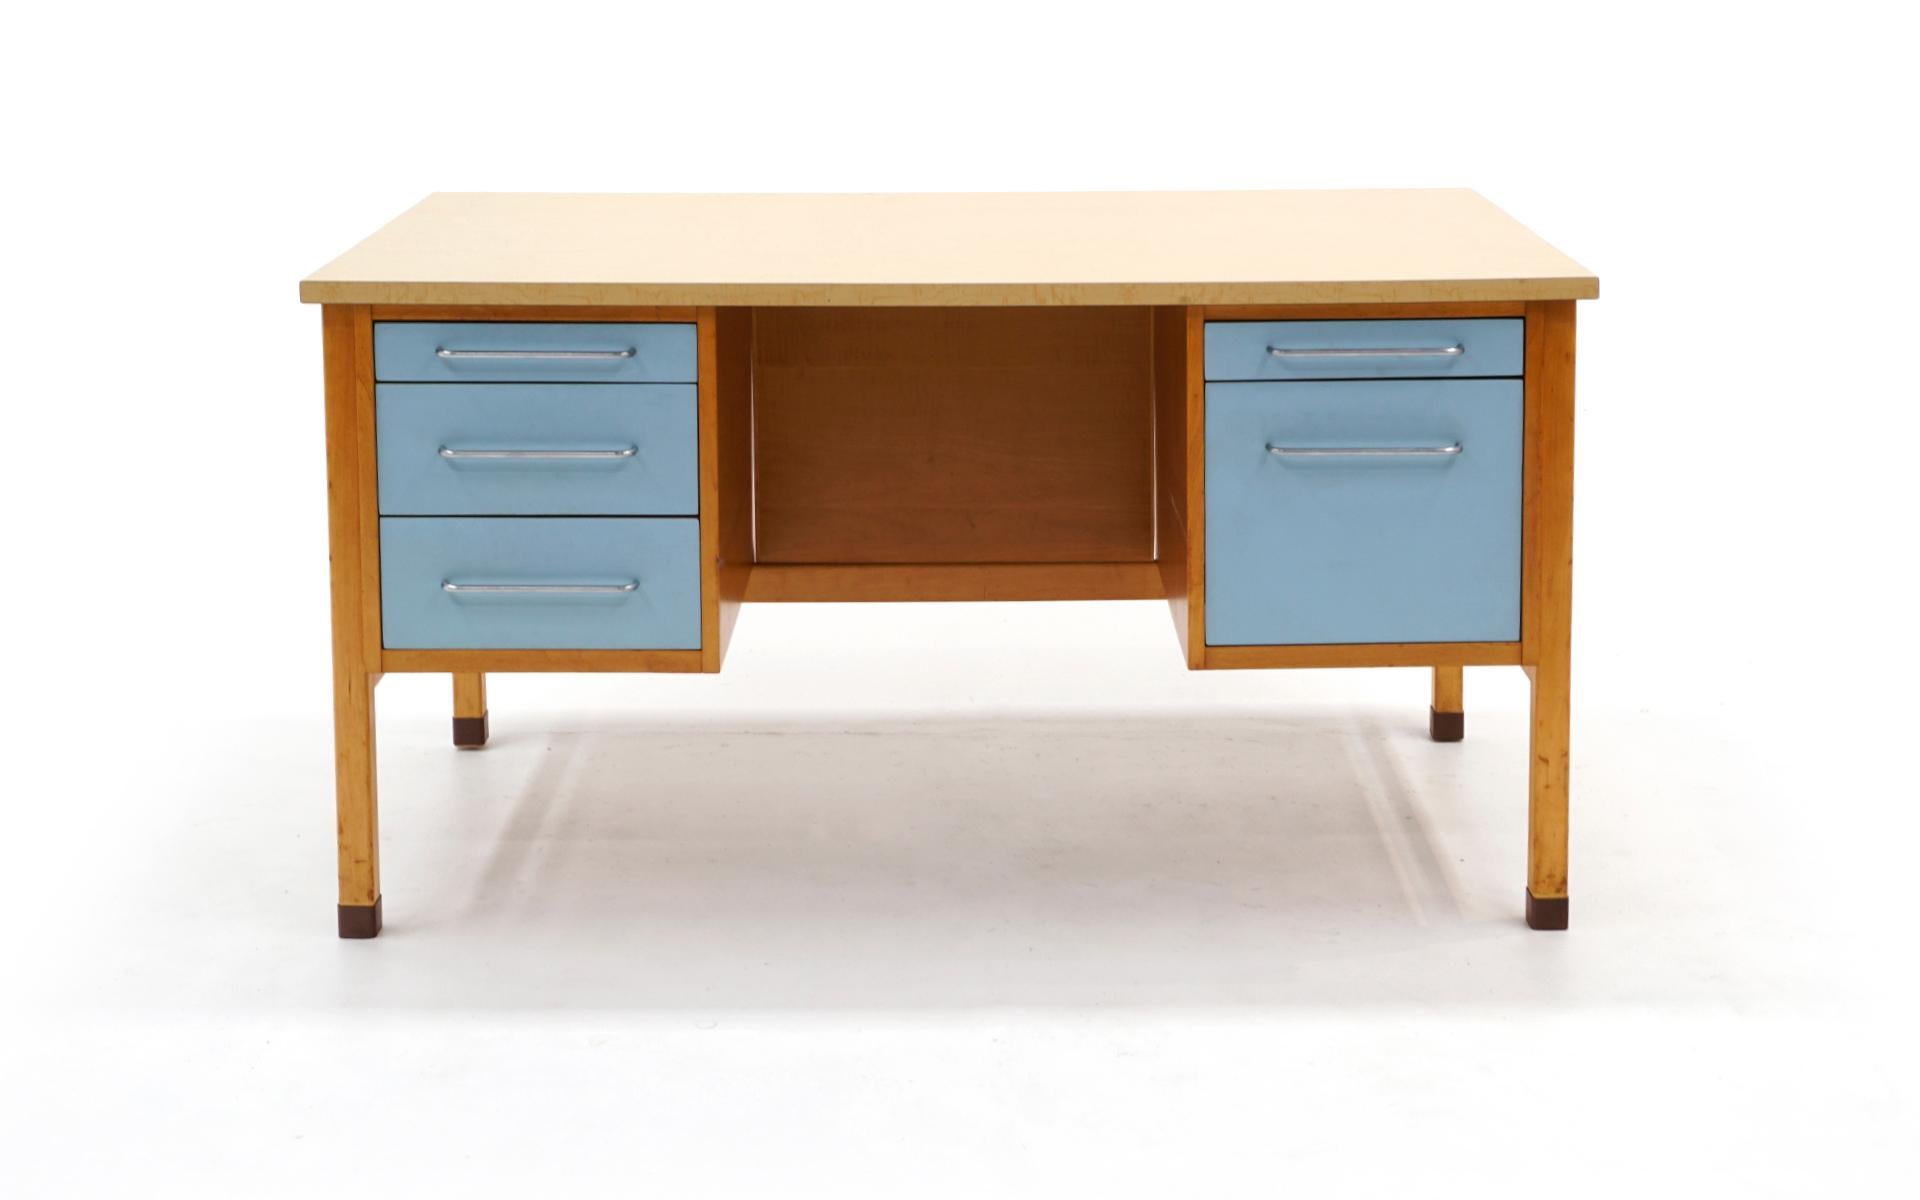 Jens Risom Schreibtisch für Risom Designs. Gehäuse aus Birkenholz, hellblau lackierte Schubladenfronten, verchromte Griffe, Messingfüße und eine praktisch unverwüstliche Laminatplatte. Der Zustand ist gut und komplett original.